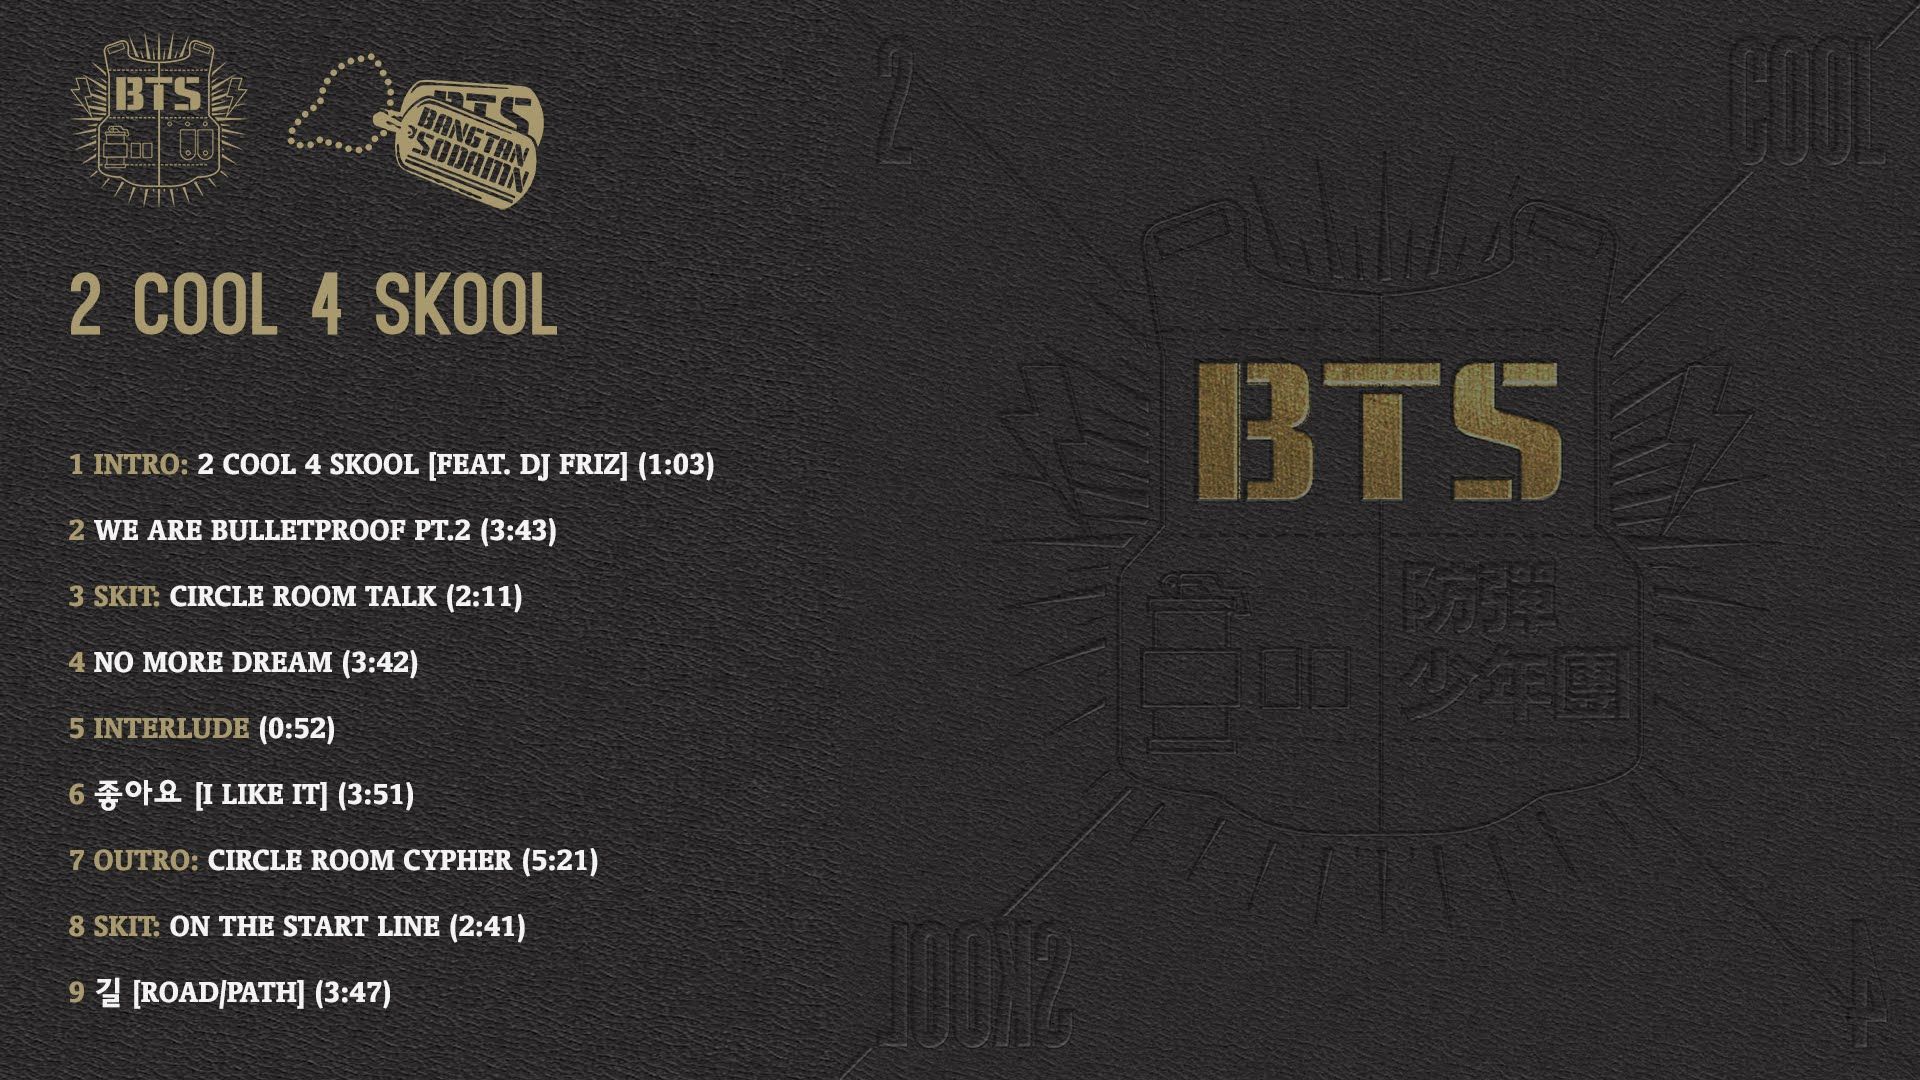 Песня bts альбом. BTS 2 cool 4 Skool альбом. BTS 2 cool 4 Skool альбом обложка. Дебютный альбом БТС 2 cool 4 School. BTS 2 cool 4 School обложка.